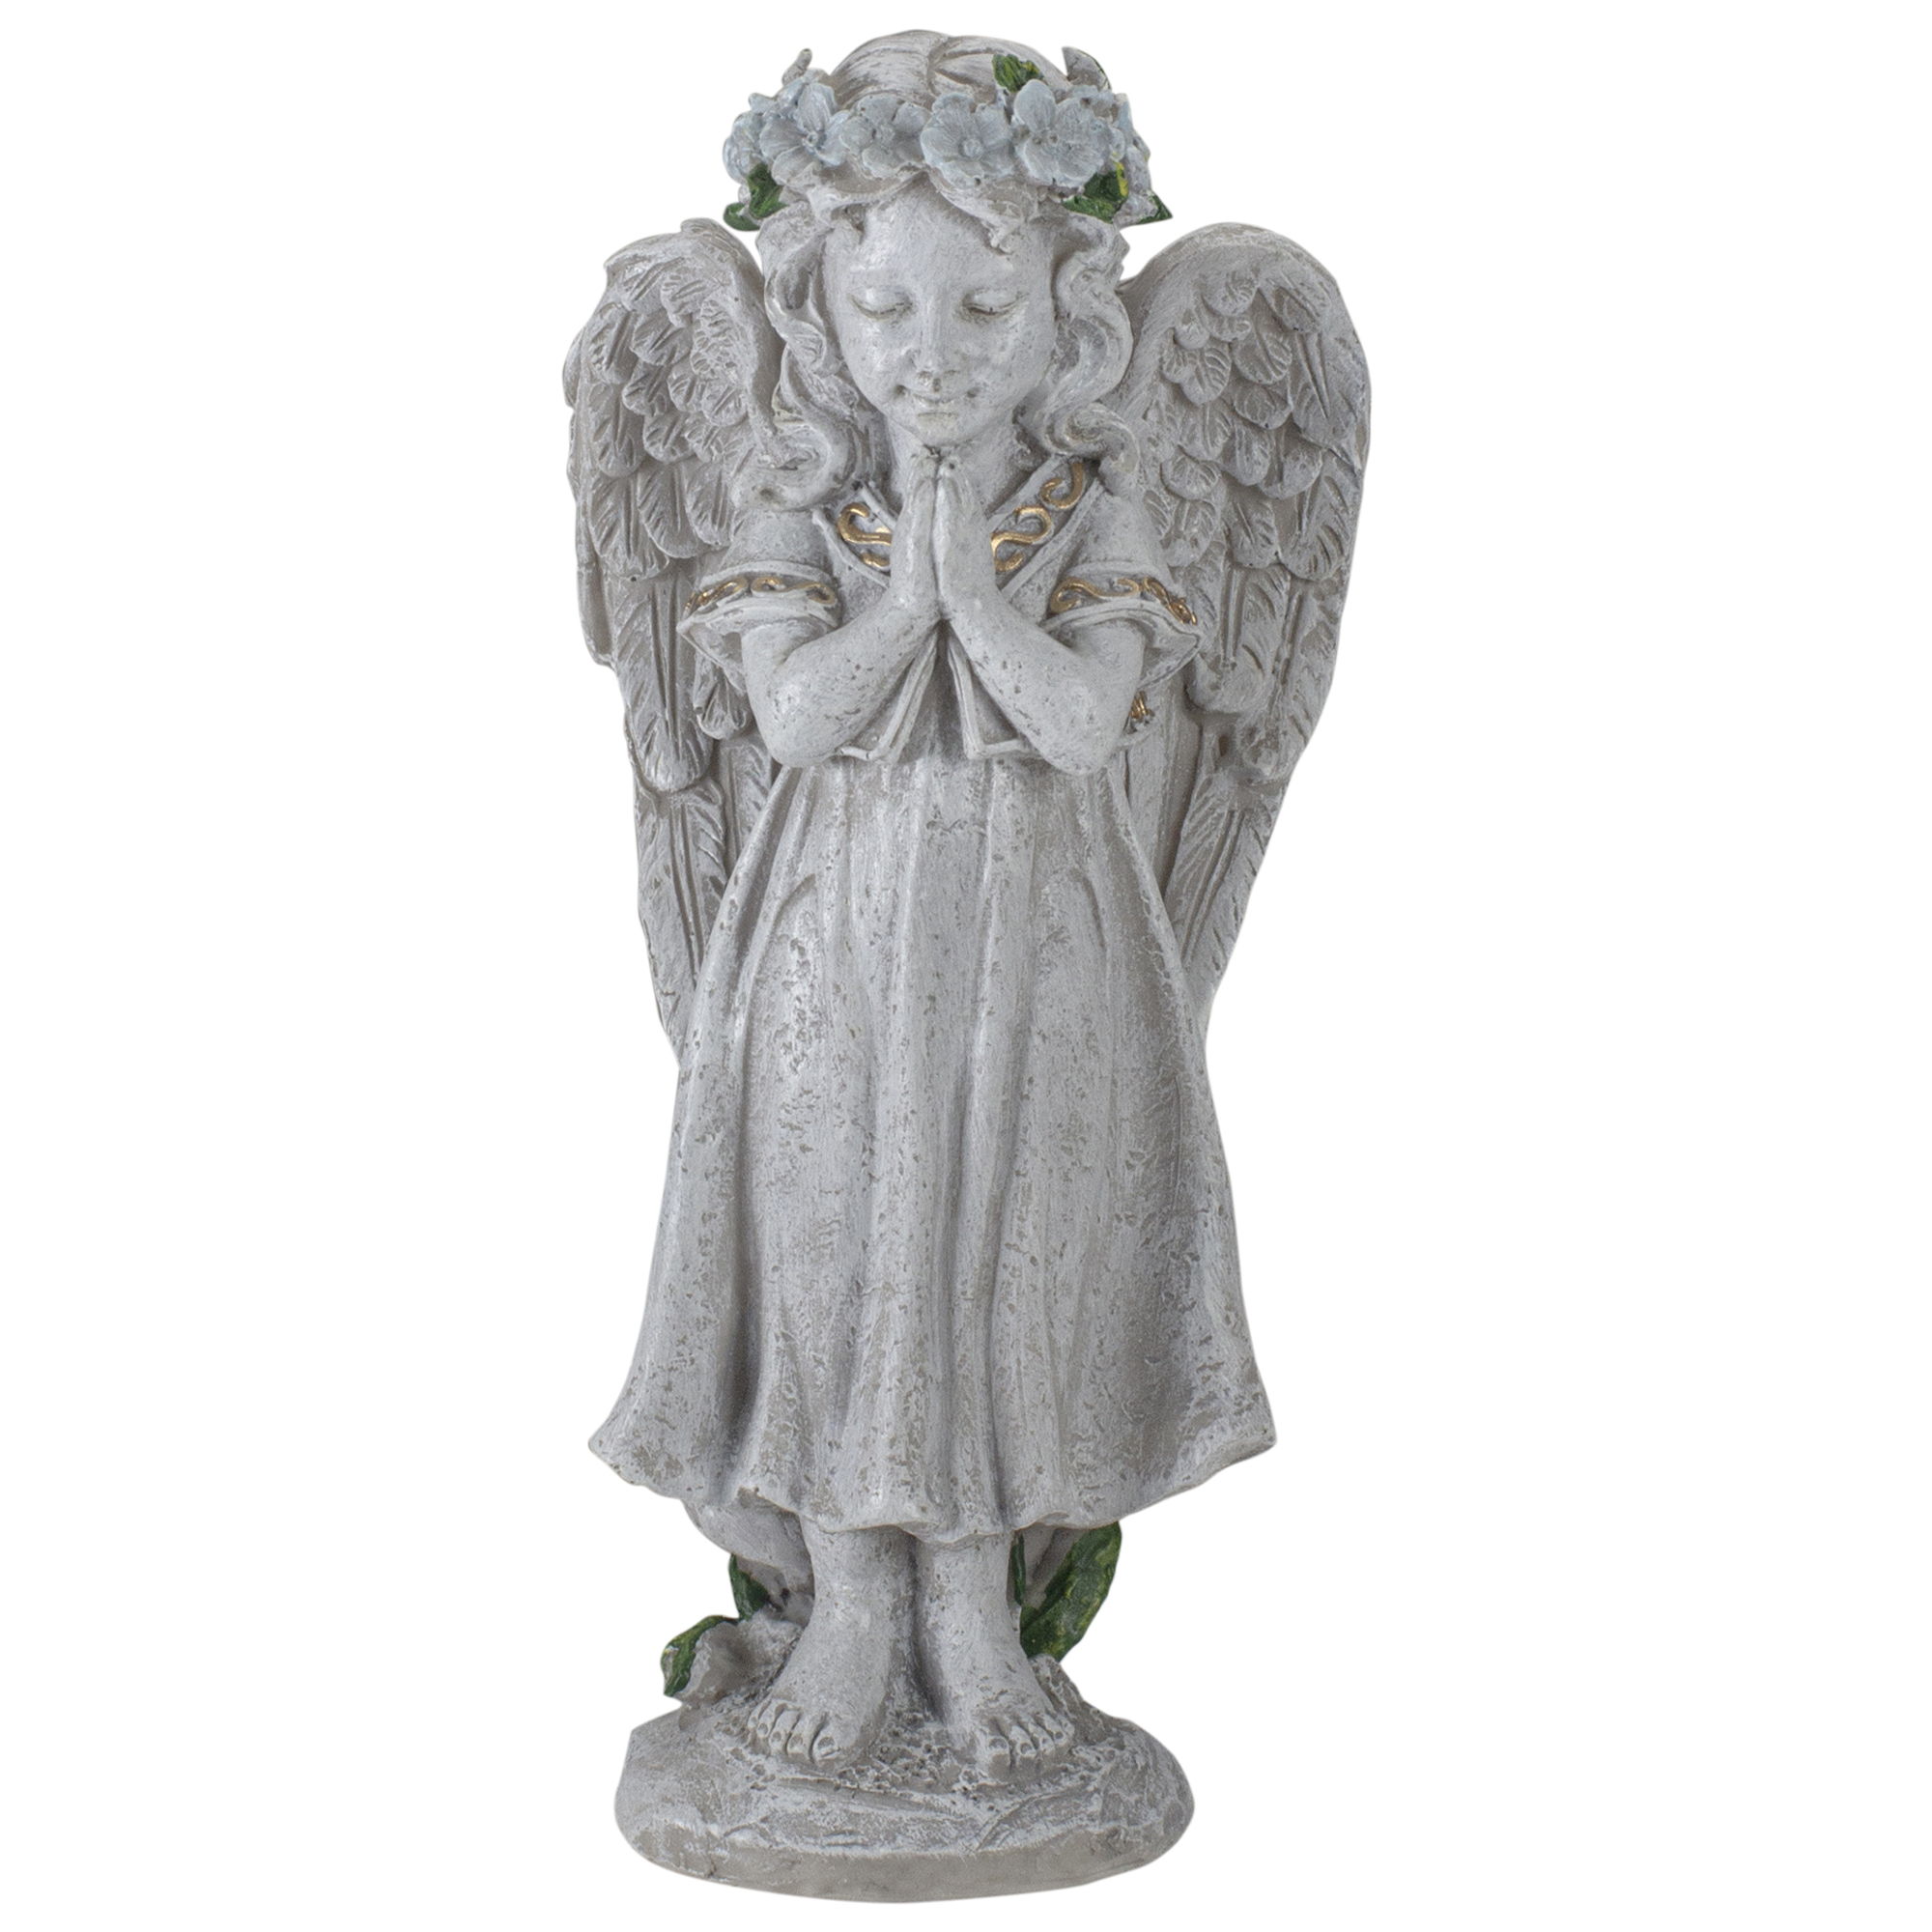 Northlight 10" Angel Standing in Prayer Outdoor Garden Statue - image 1 of 5